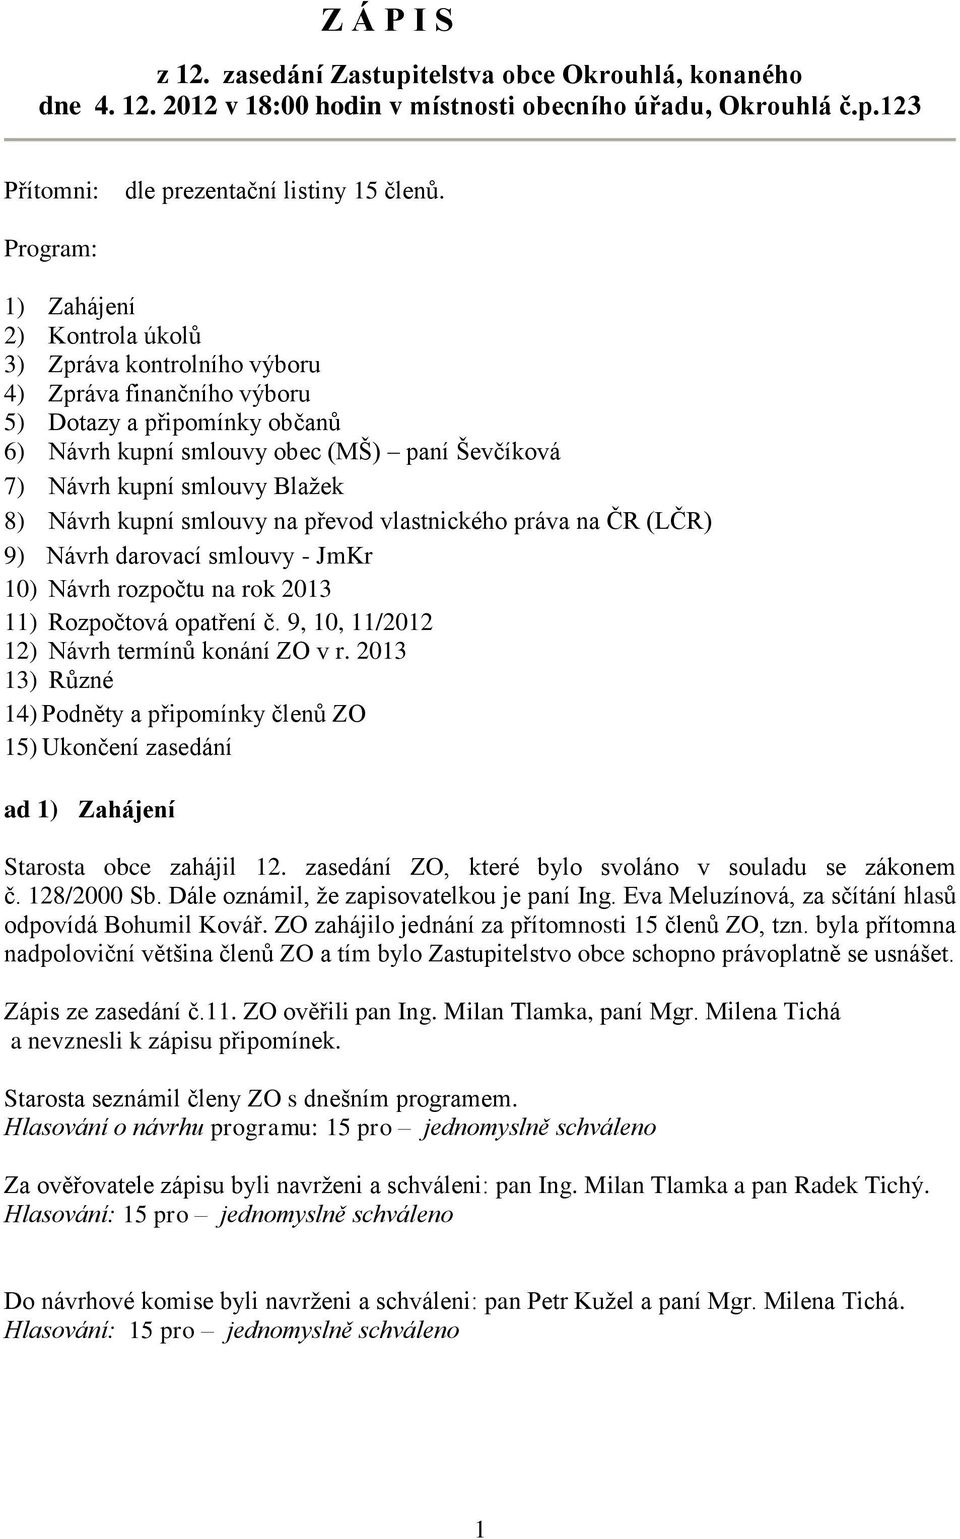 Blažek 8) Návrh kupní smlouvy na převod vlastnického práva na ČR (LČR) 9) Návrh darovací smlouvy - JmKr 10) Návrh rozpočtu na rok 2013 11) Rozpočtová opatření č.